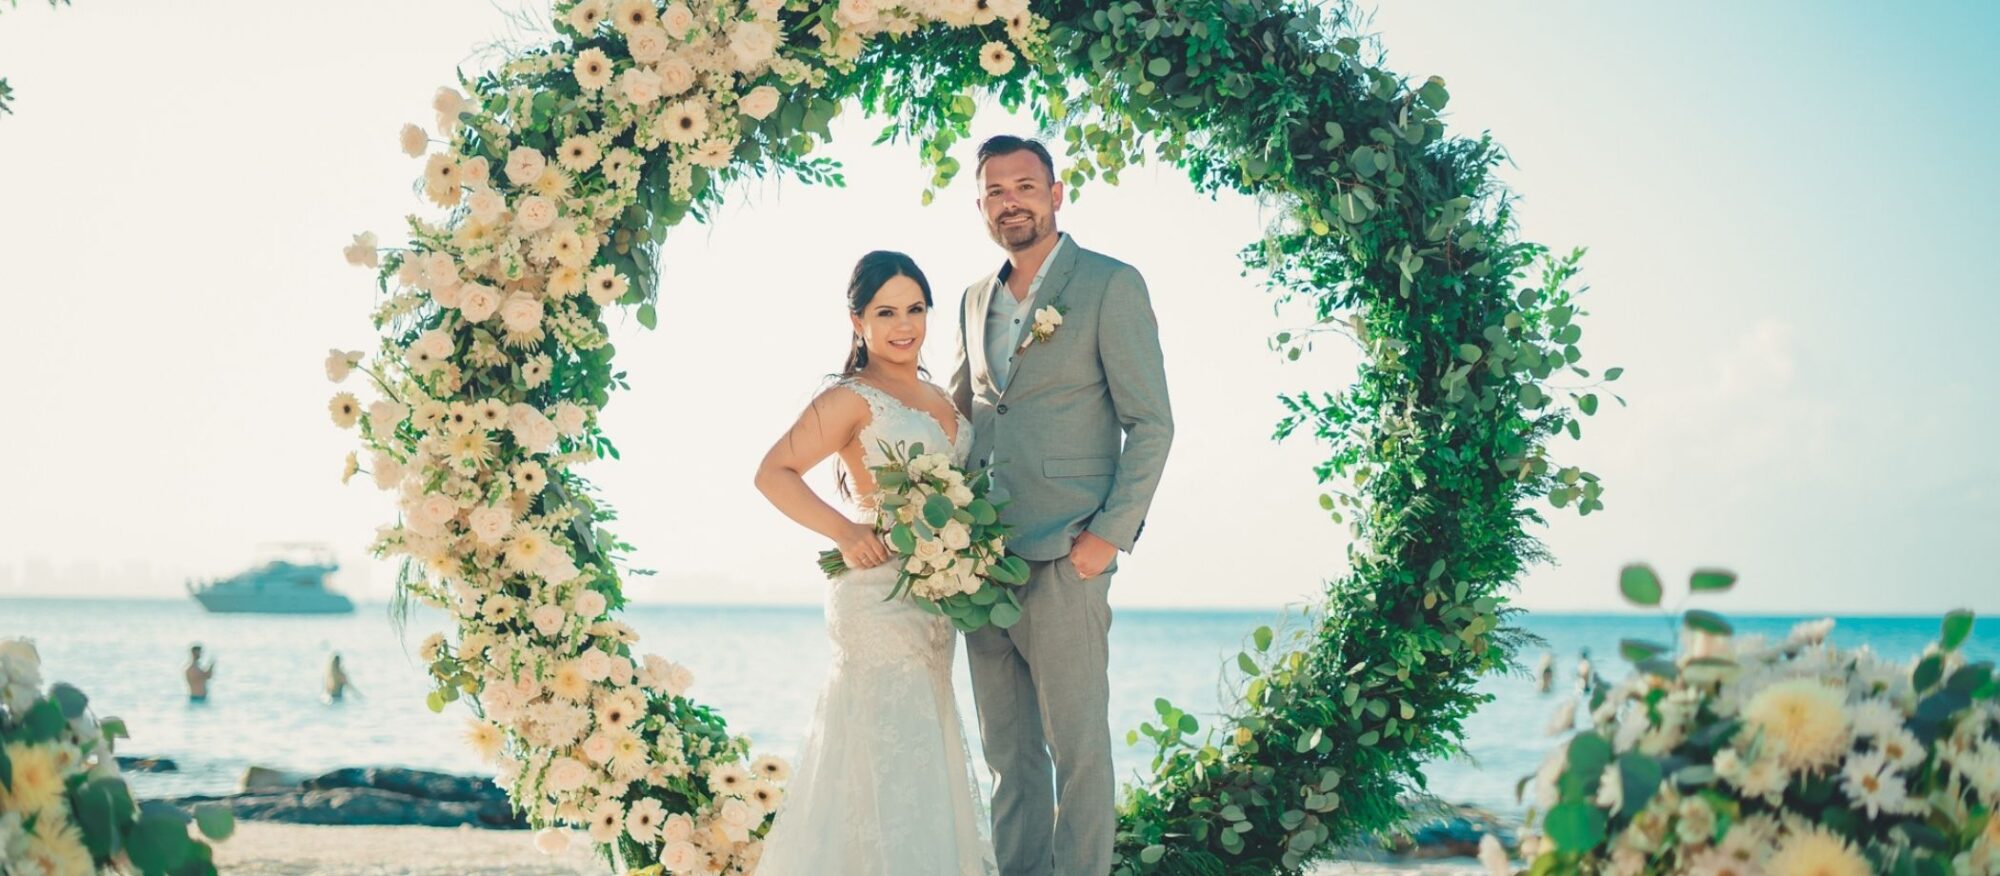 Casar em Cancún é um sonho que pode se tornar realidade.